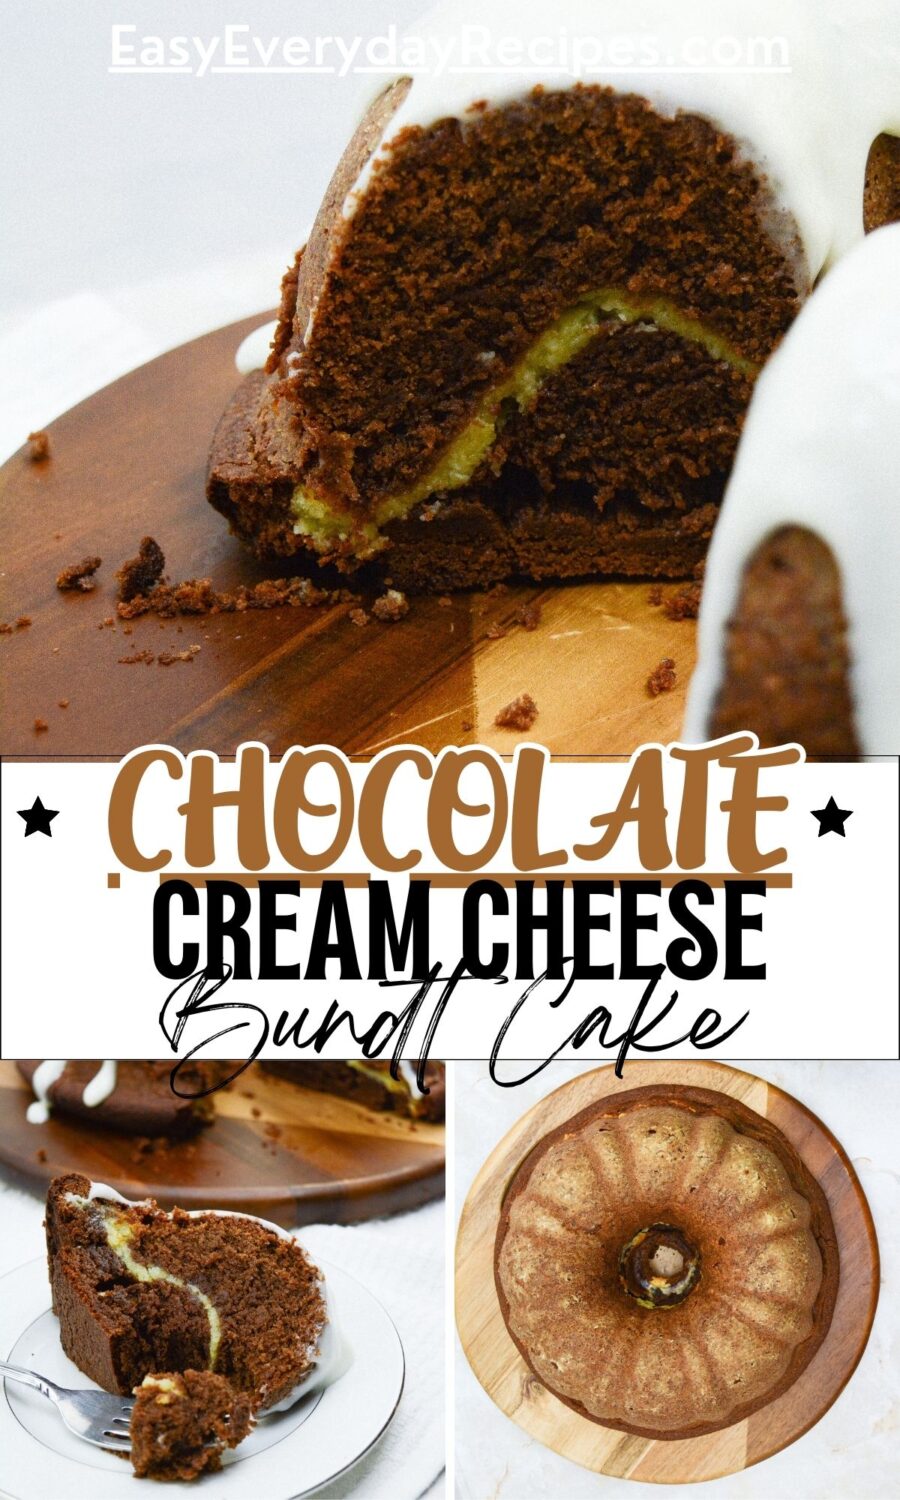 Chocolate cream cheese bundt cake.